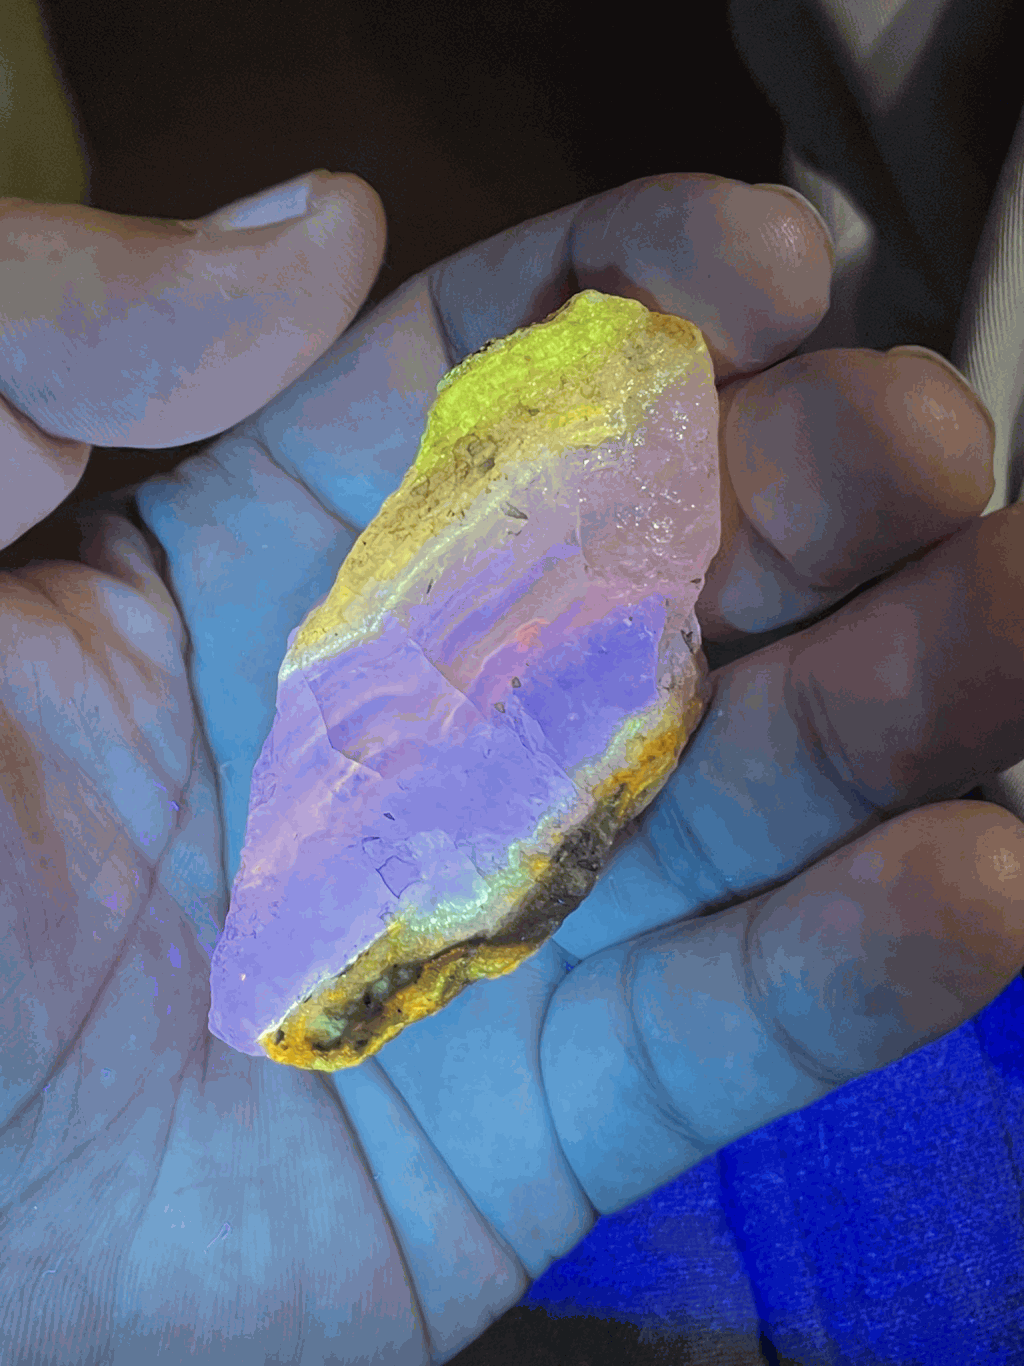 “北海道石”在紫外线照射下会发出绚丽耀眼的萤光。twitter@fluor_doublet